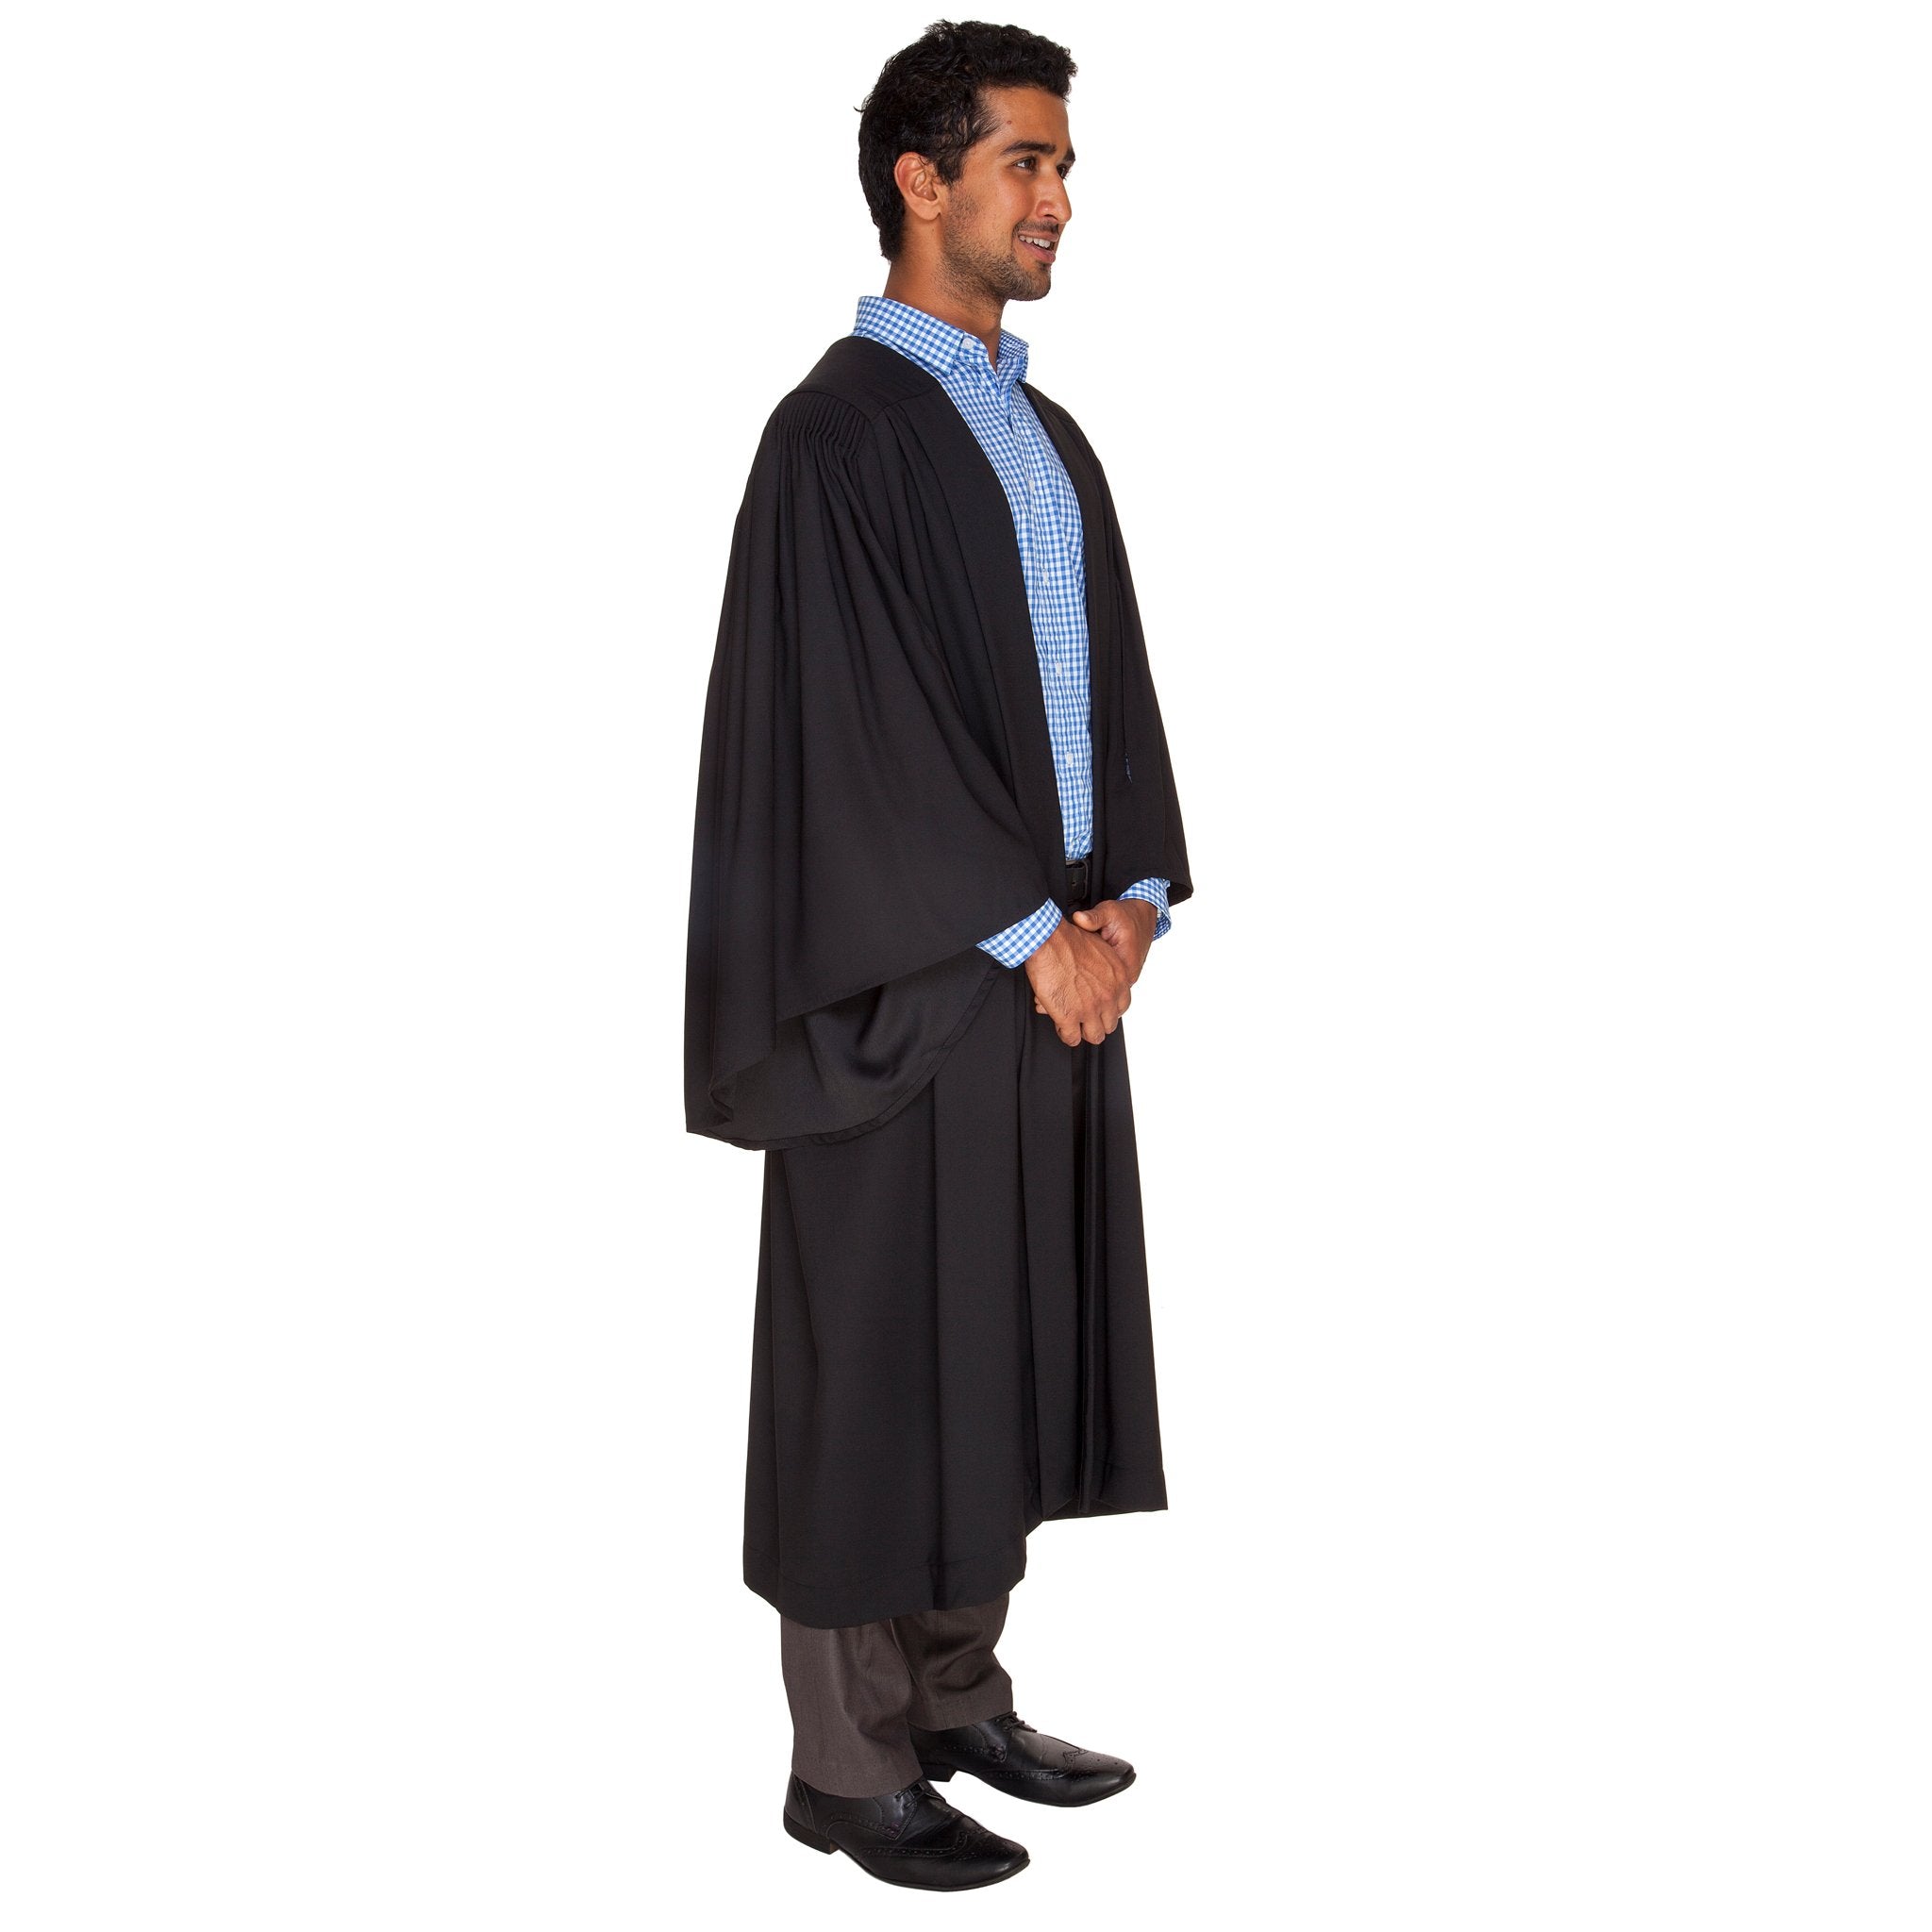 USyd Graduation Gown Set - Bachelor of Economics | University Graduation  Gown Set